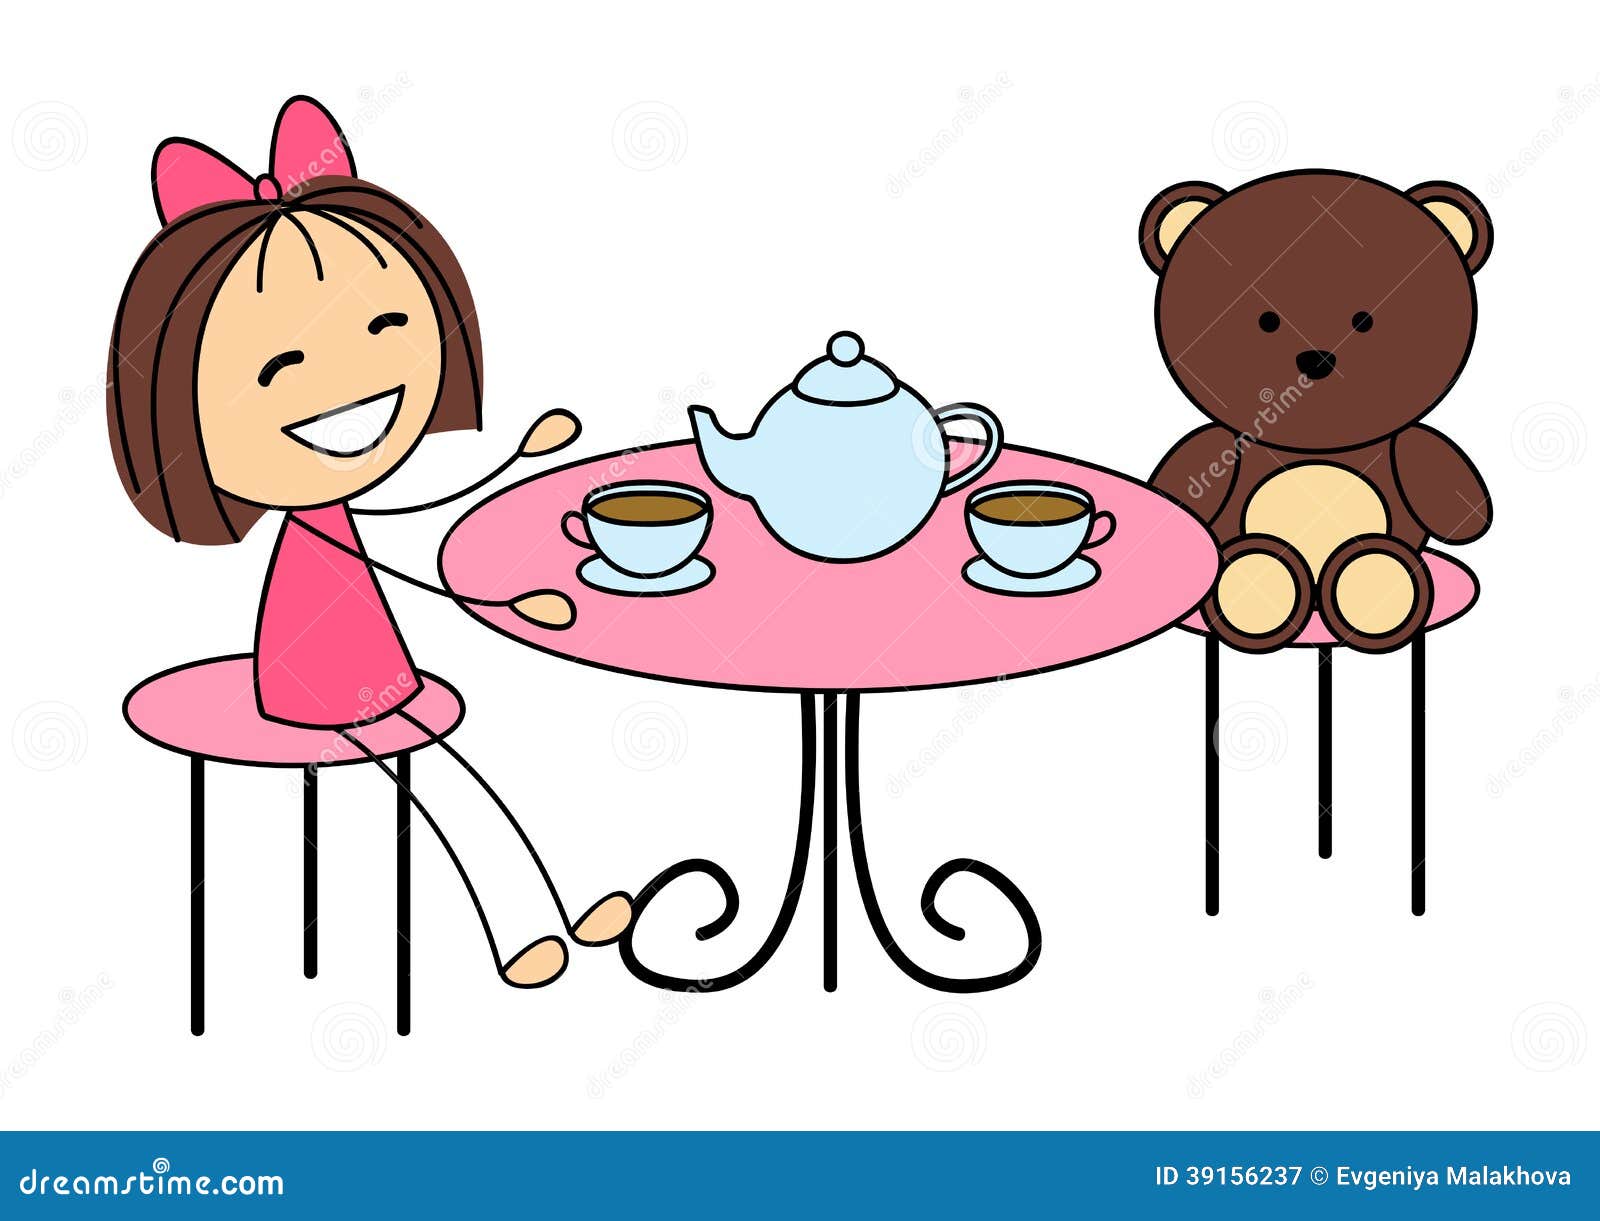 Мультяшная девочка пьет чай